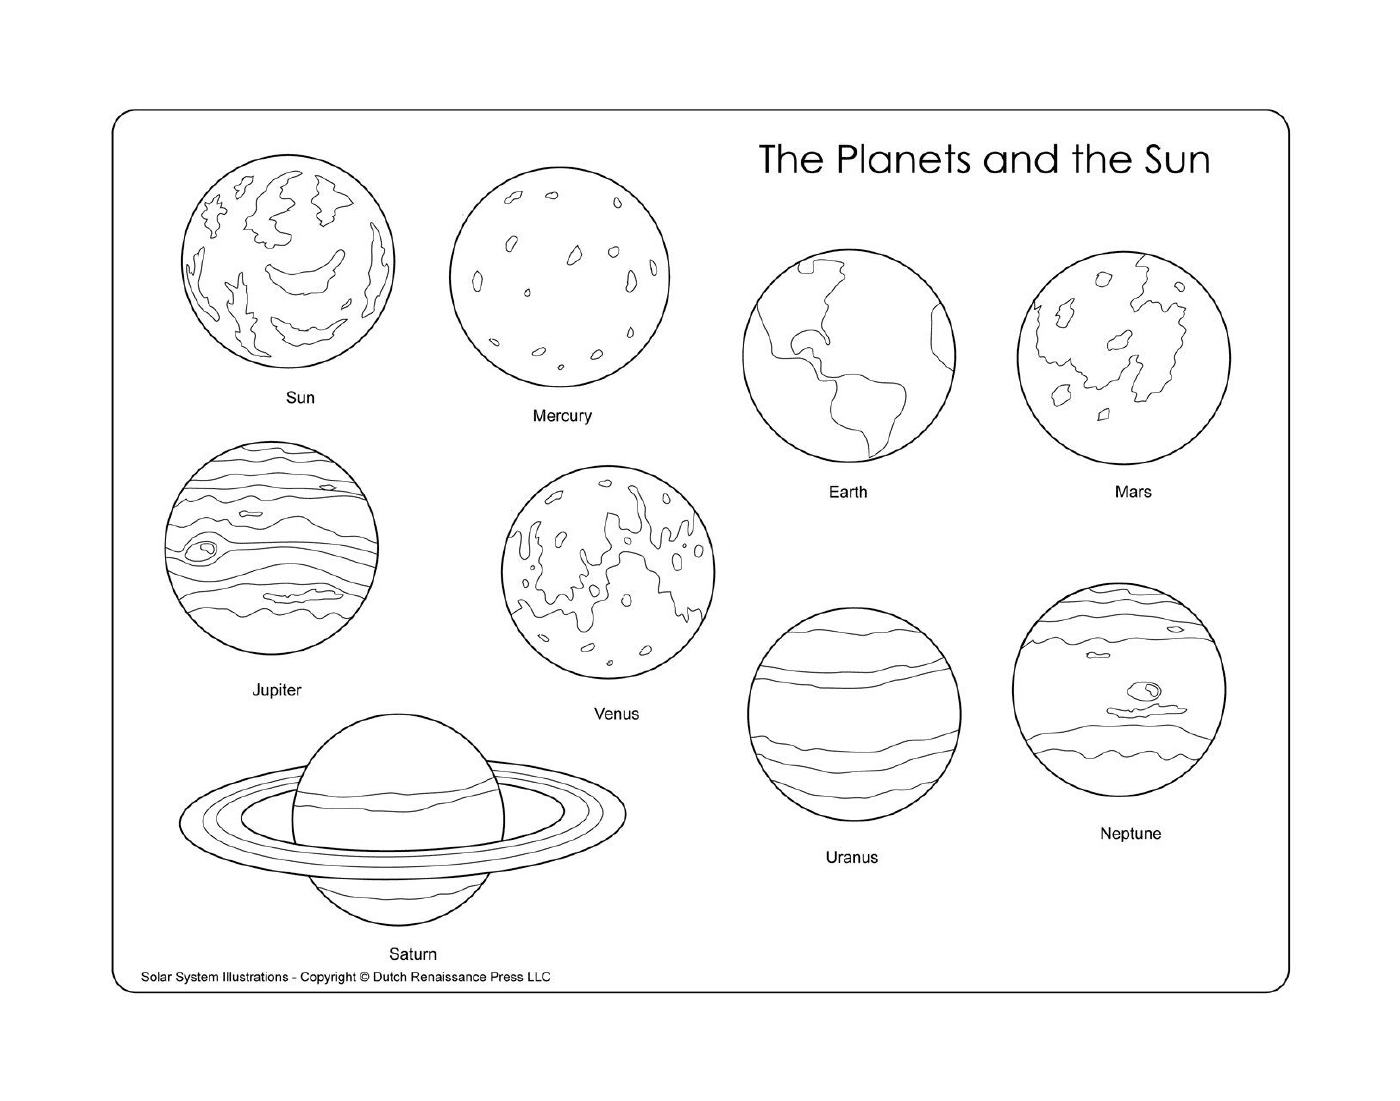  Planeten und Sonne im Weltraum 